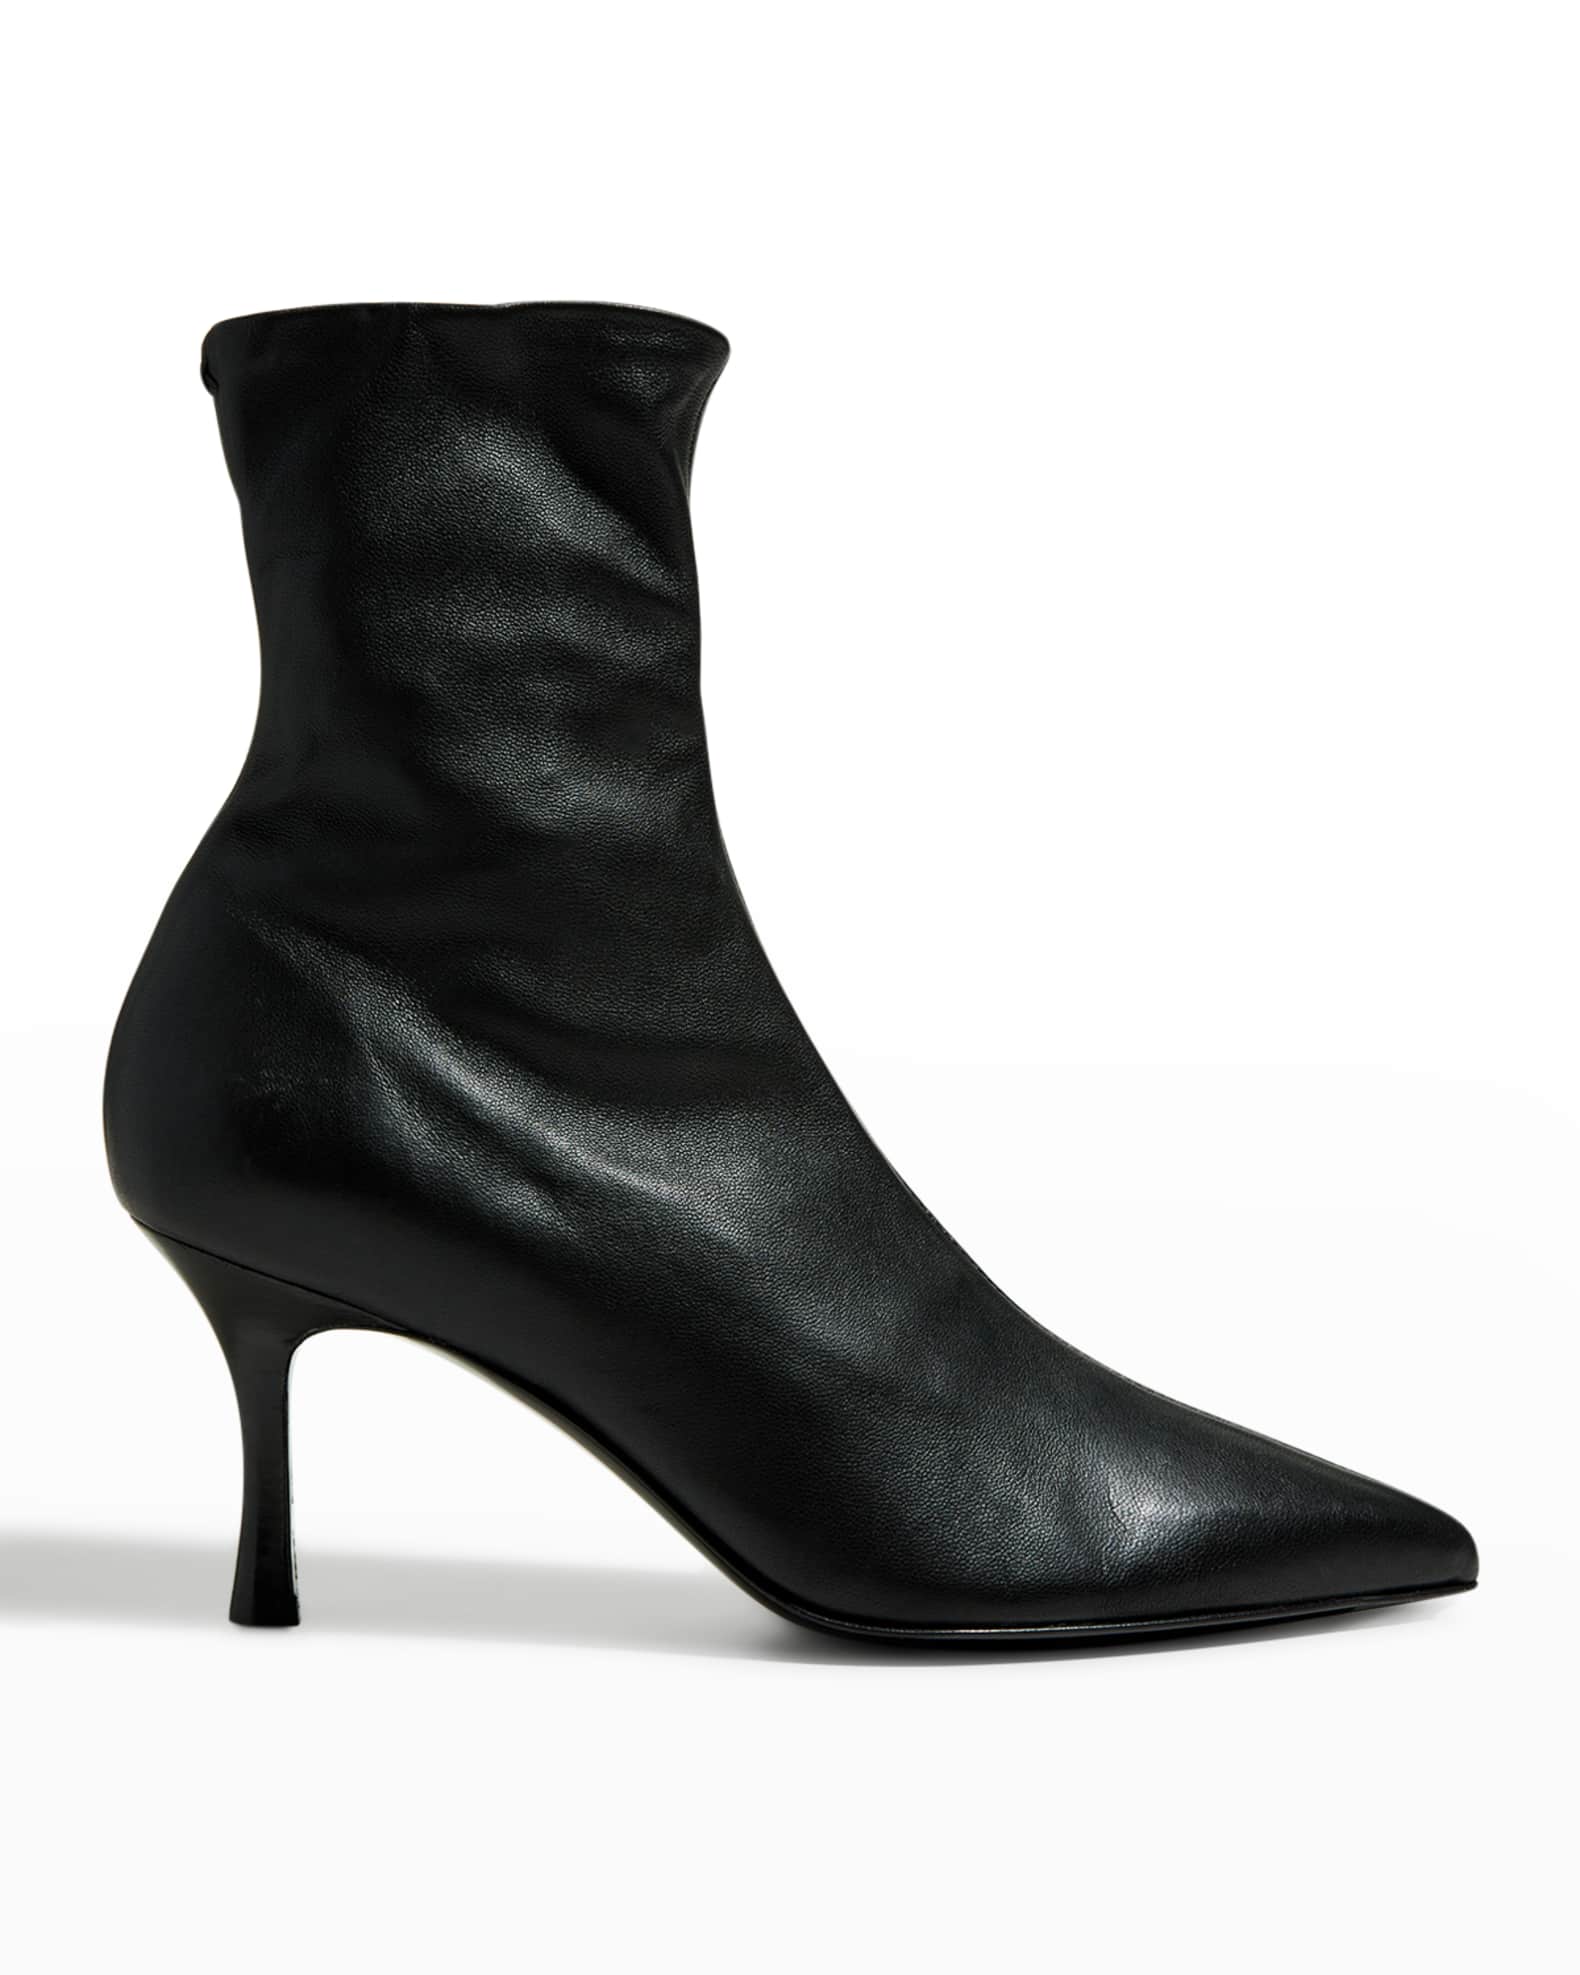 Rag & Bone Brea Glove Stiletto Ankle Boots | Neiman Marcus